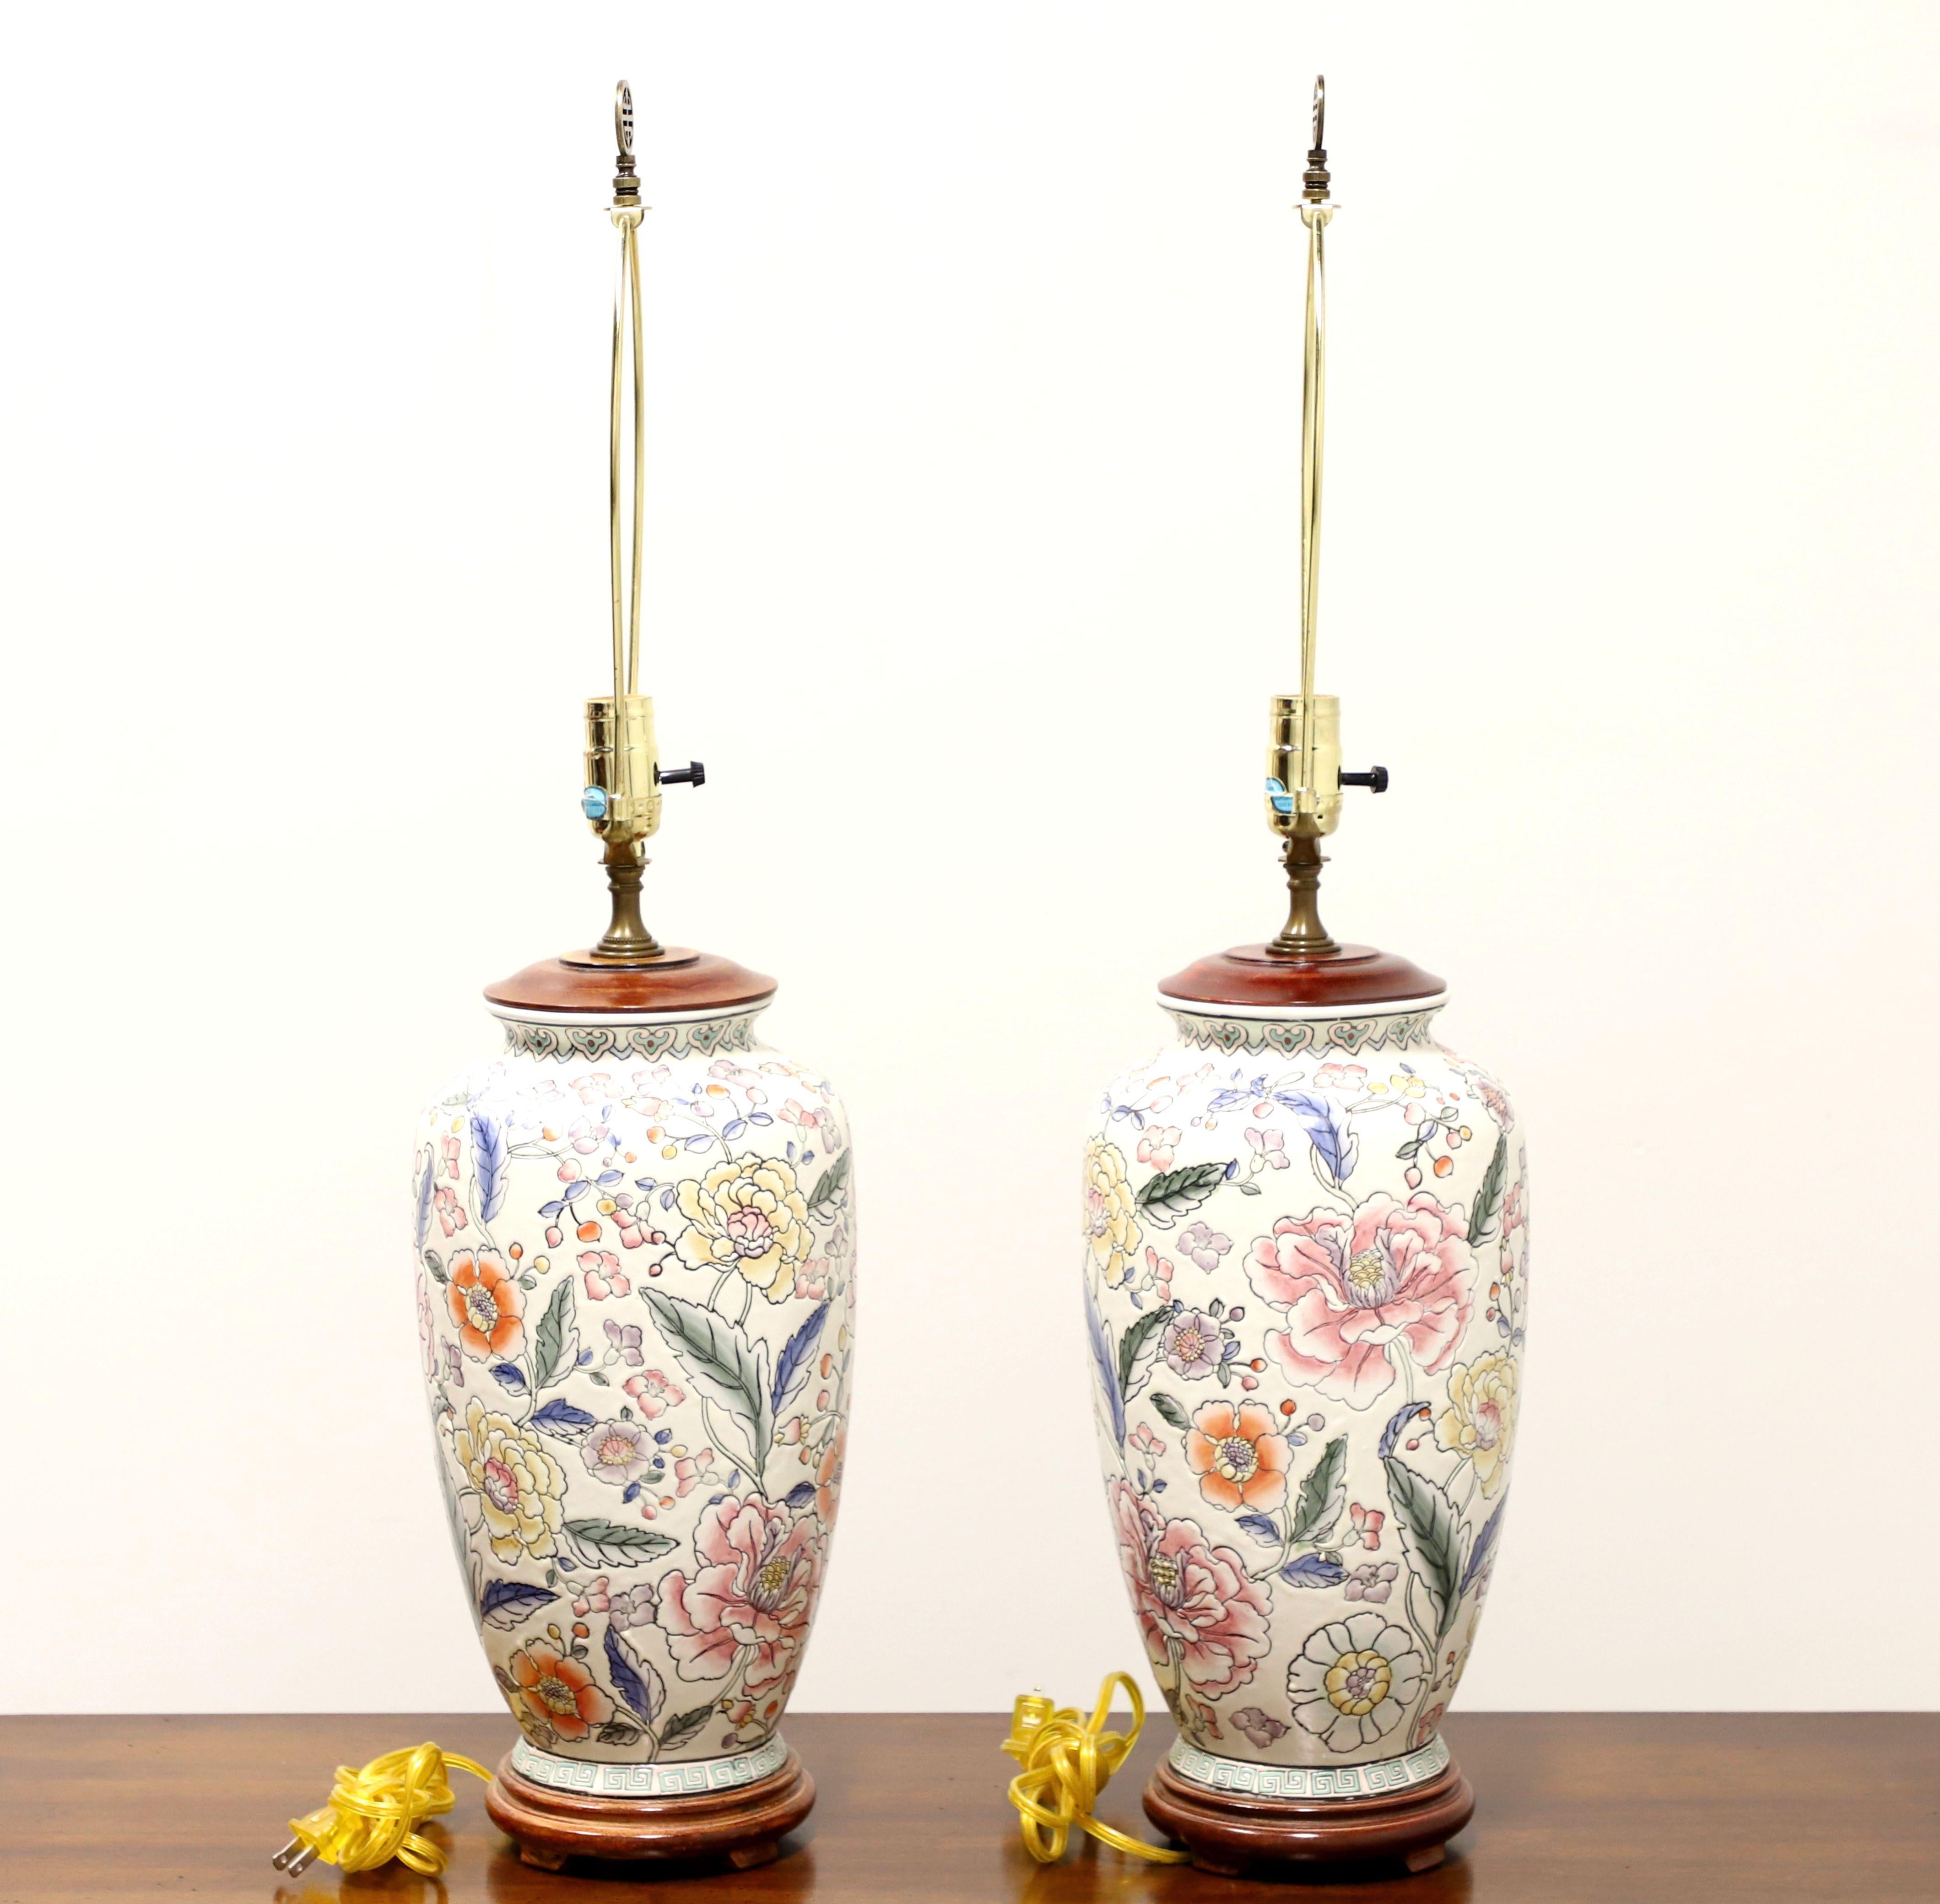 Paire de lampes de table de style Chinoiserie asiatique, sans marque. En porcelaine de style urne, peinte à la main, avec une base blanc crème, des motifs floraux roses, jaunes, orange, bleus et verts, un couvercle en bois sur le dessus, et sur une